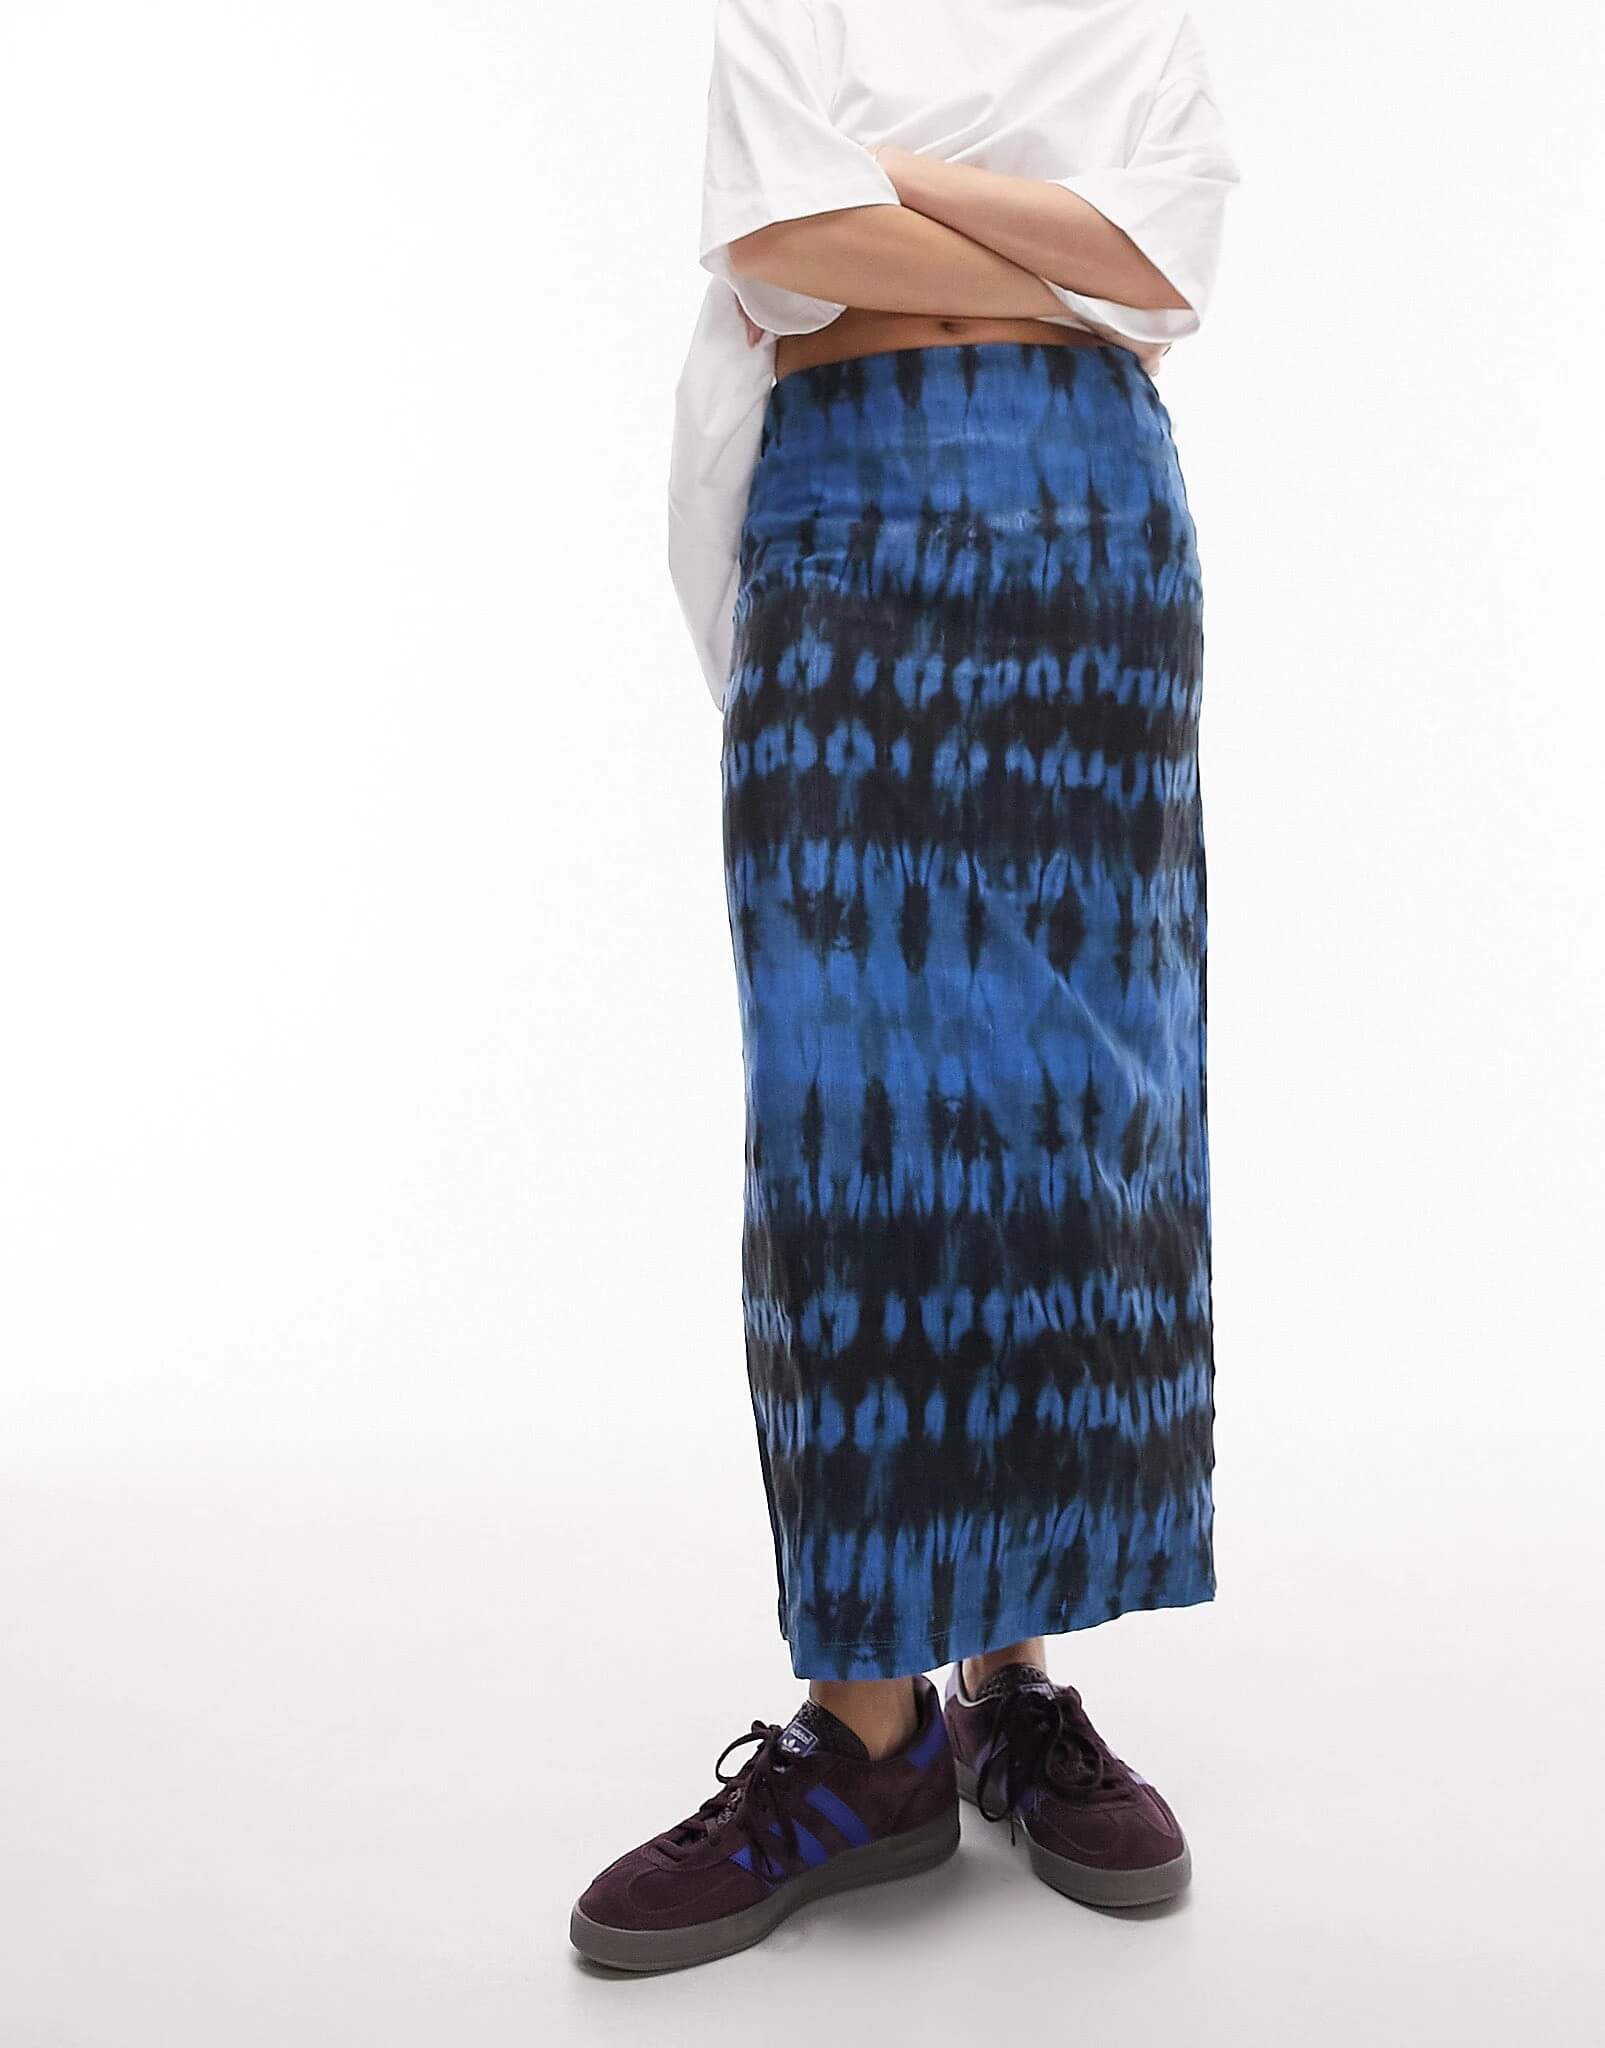 Юбка Topshop Textured Printed Midi, синий женская длинная юбка миди из тюля плиссированная юбка из эластичной сетки с высокой талией черная белая длинная юбка в уличном стиле весн